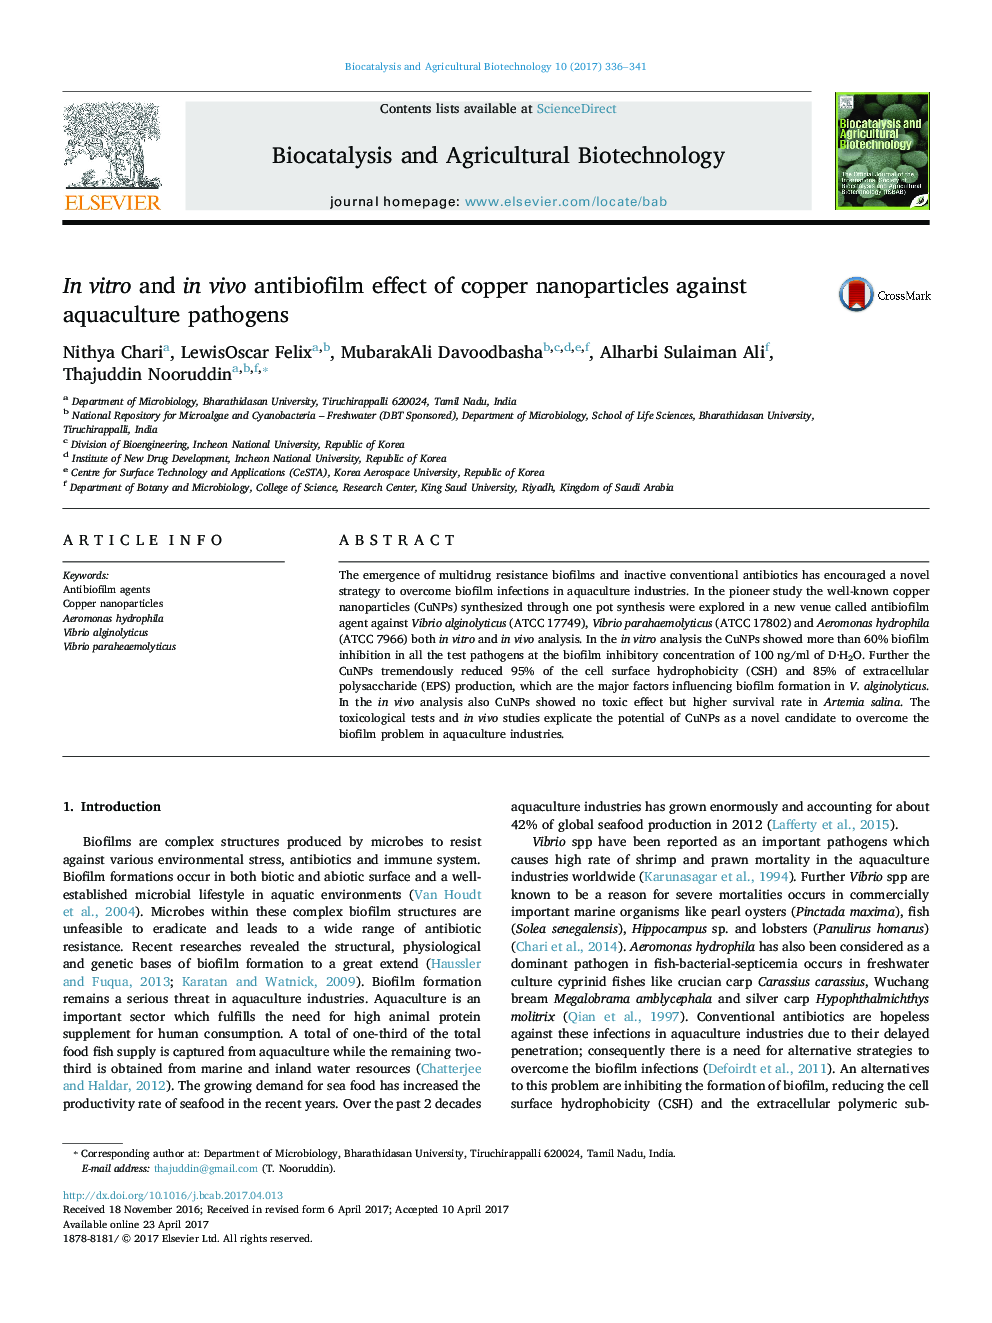 In vitro and in vivo antibiofilm effect of copper nanoparticles against aquaculture pathogens